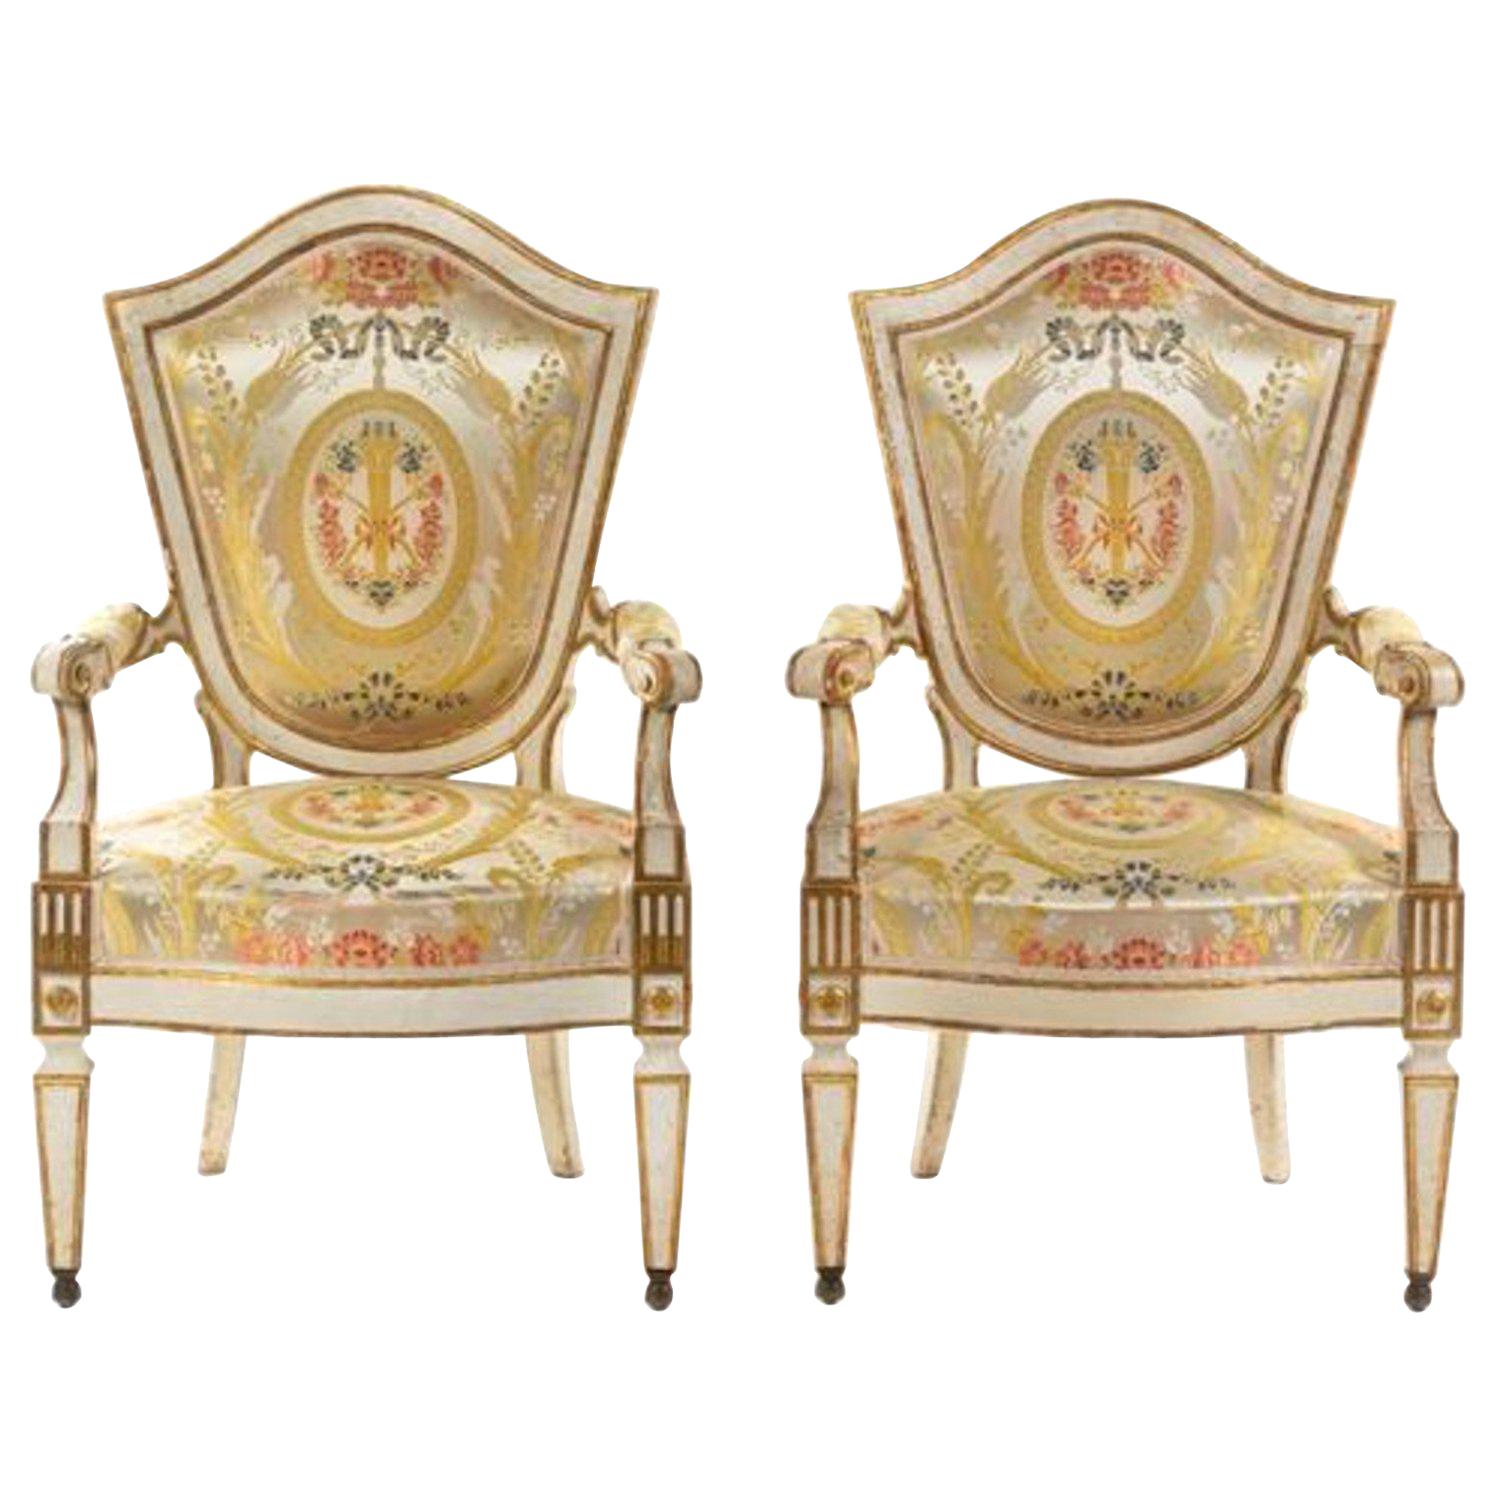 Importante paire de fauteuils peints italiens Florence, 18ème siècle